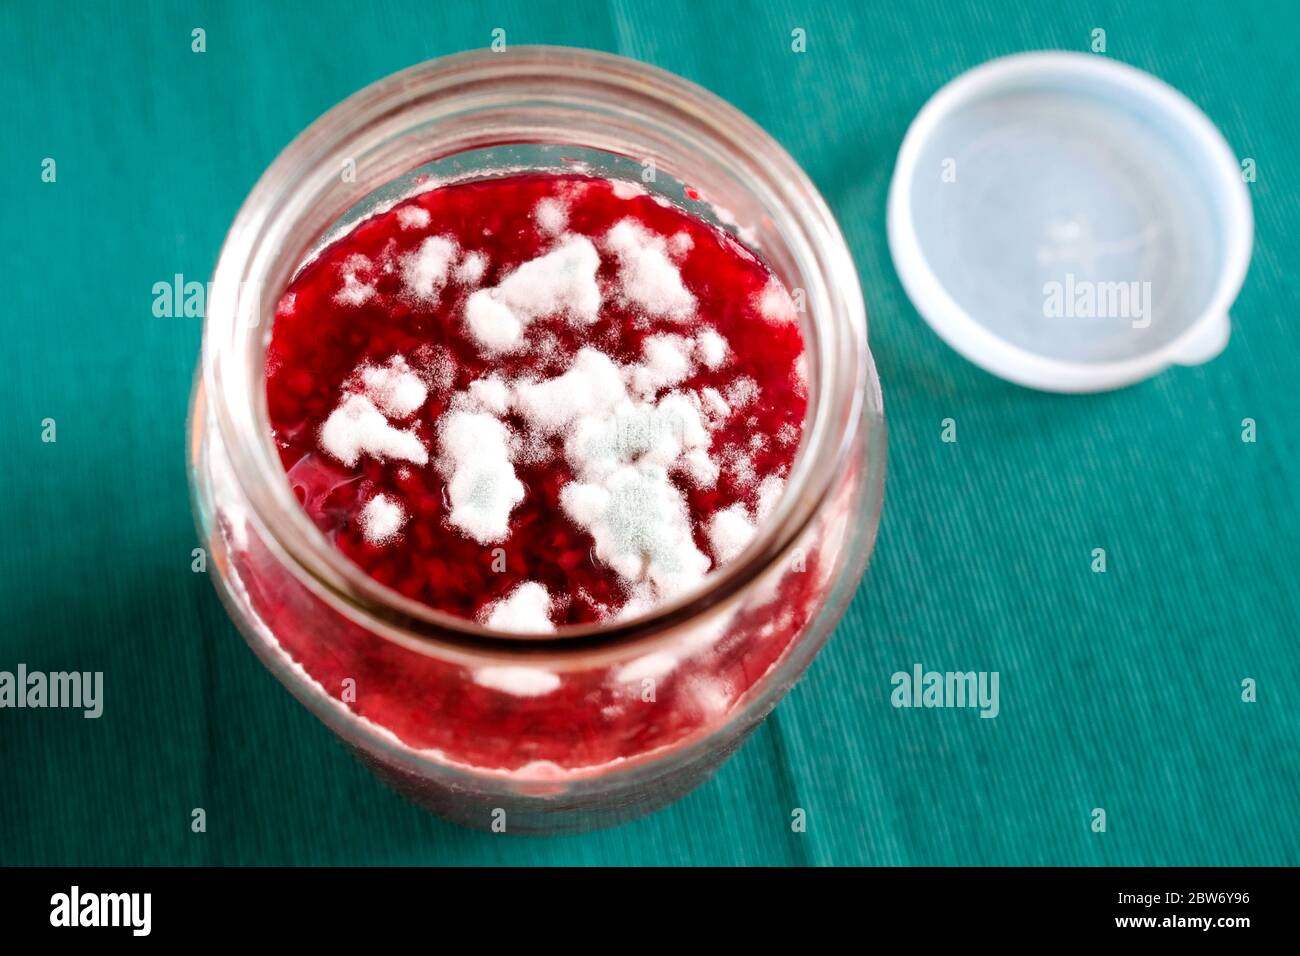 Schimmel auf roter Marmelade. Verdorbenes Produkt in einem Glasgefäß. Grüne  und weiße Pilze Stockfotografie - Alamy